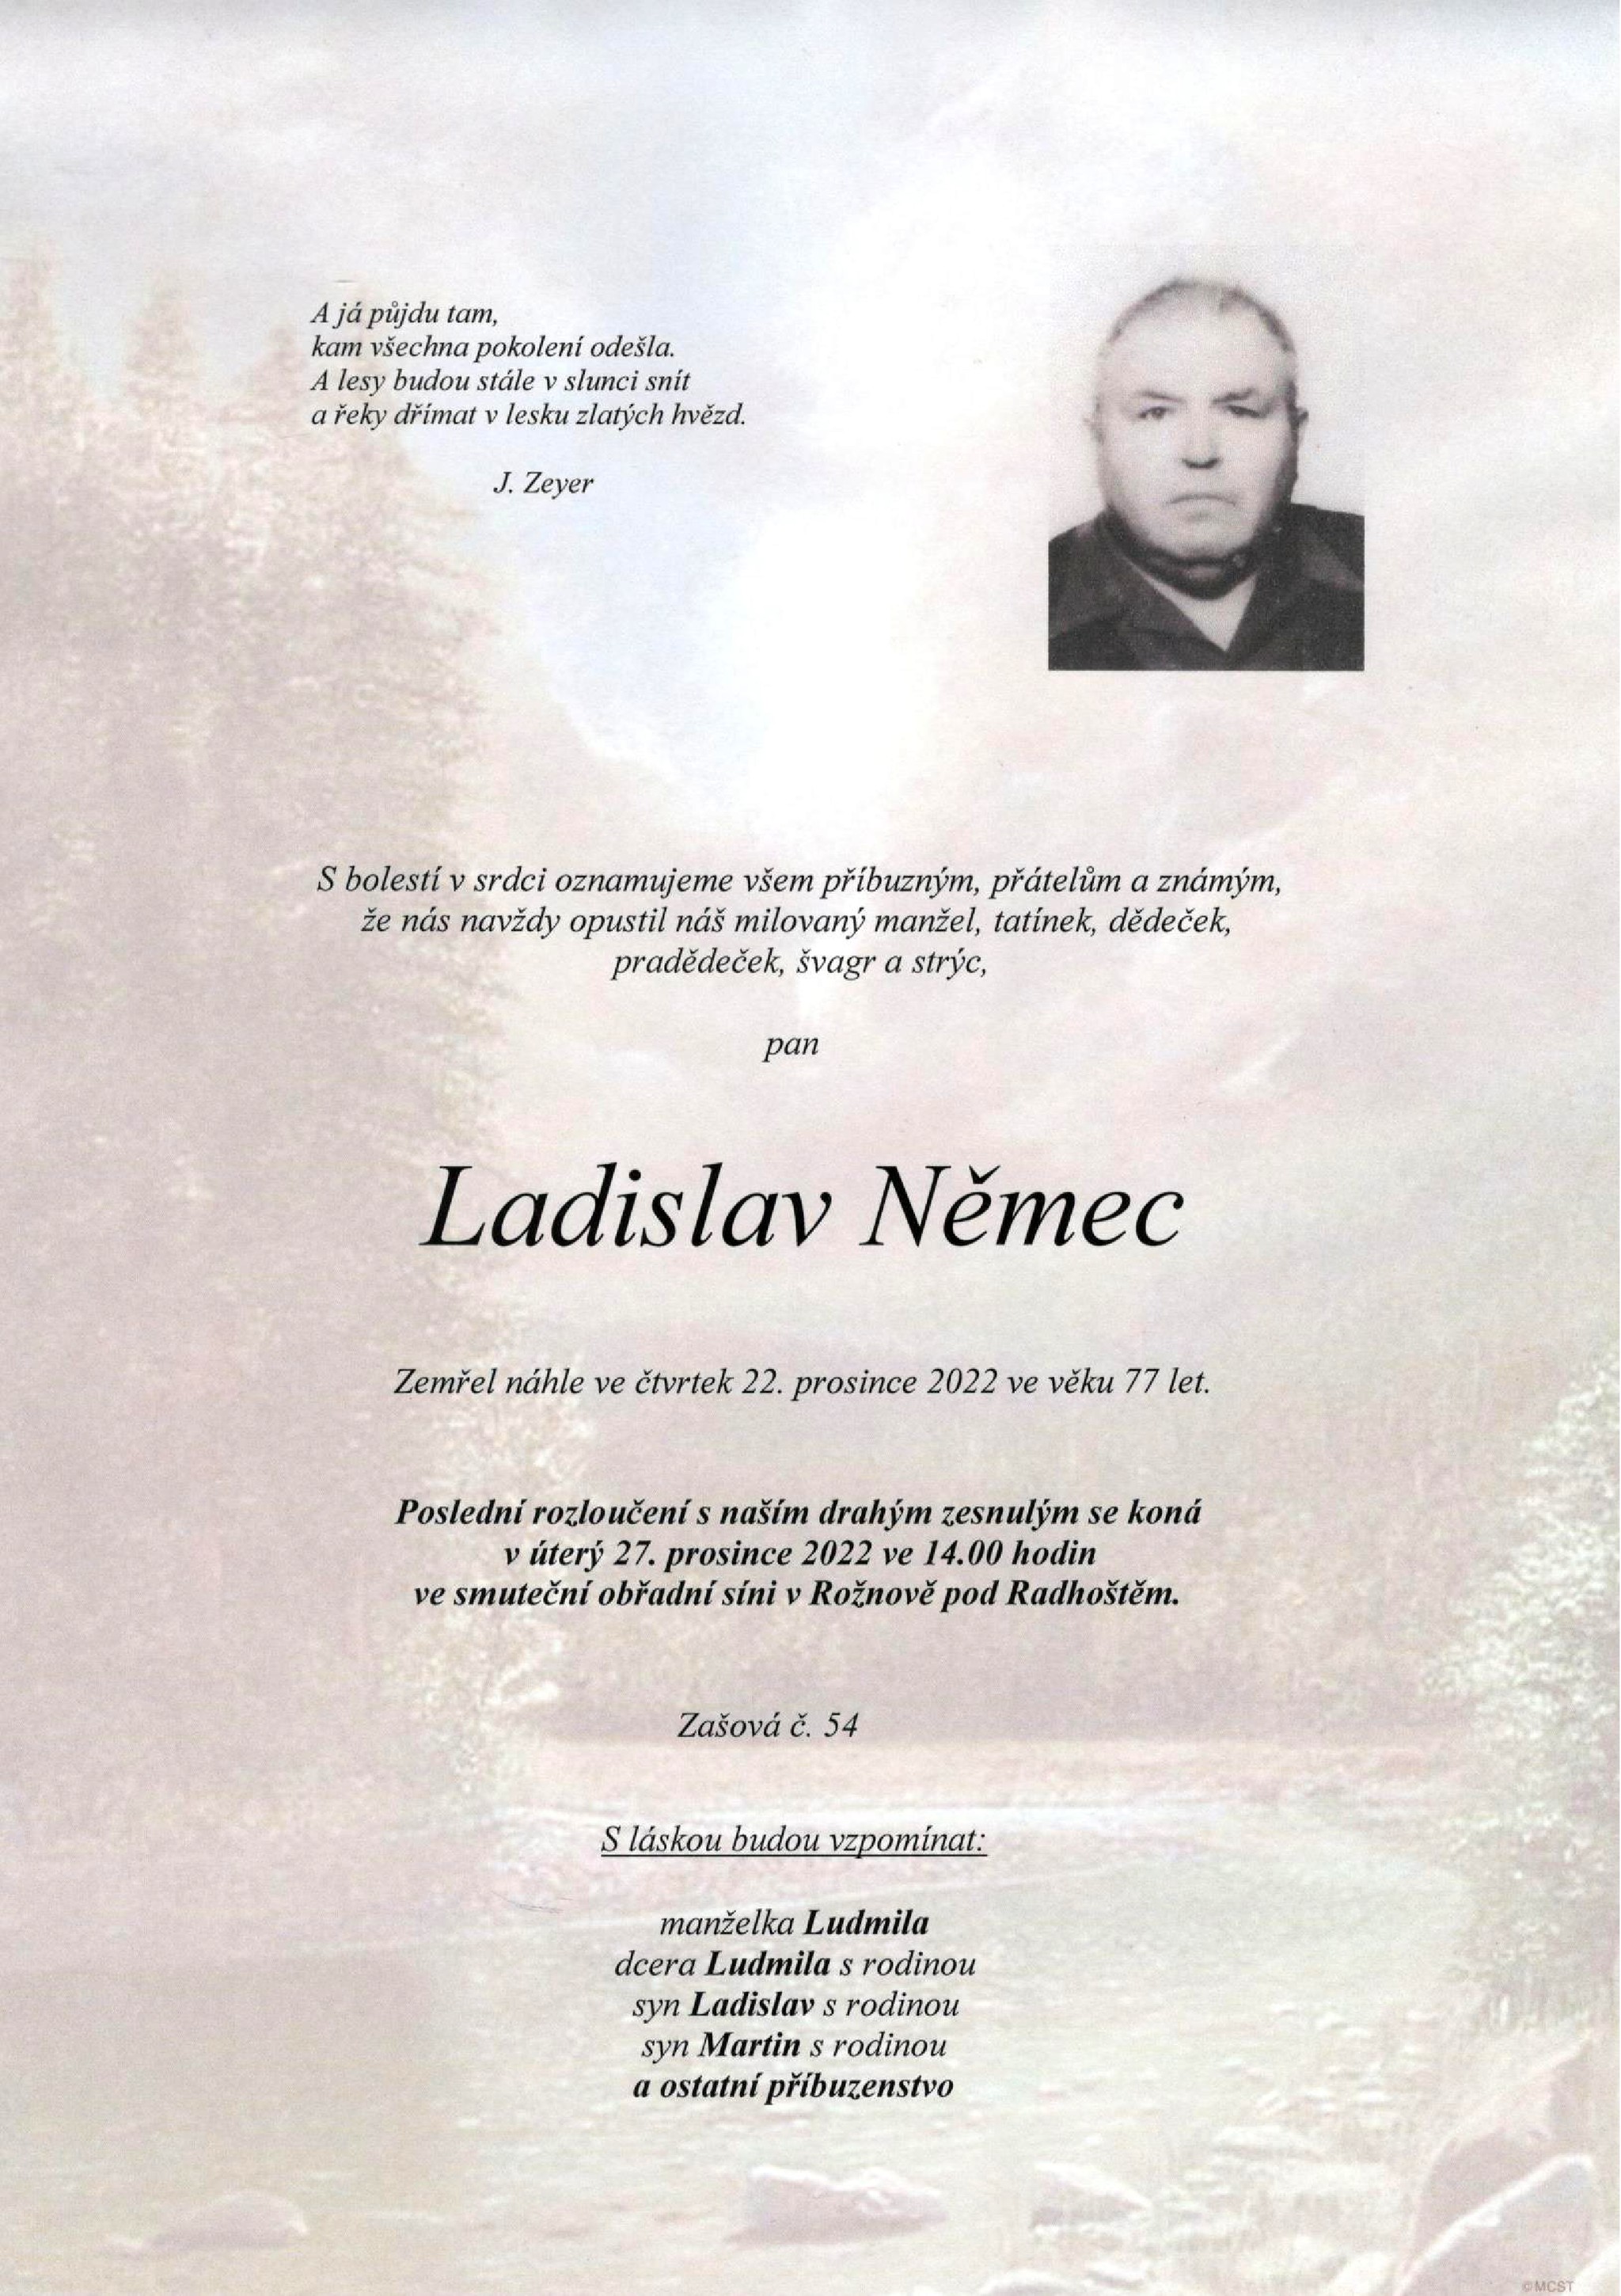 Ladislav Němec